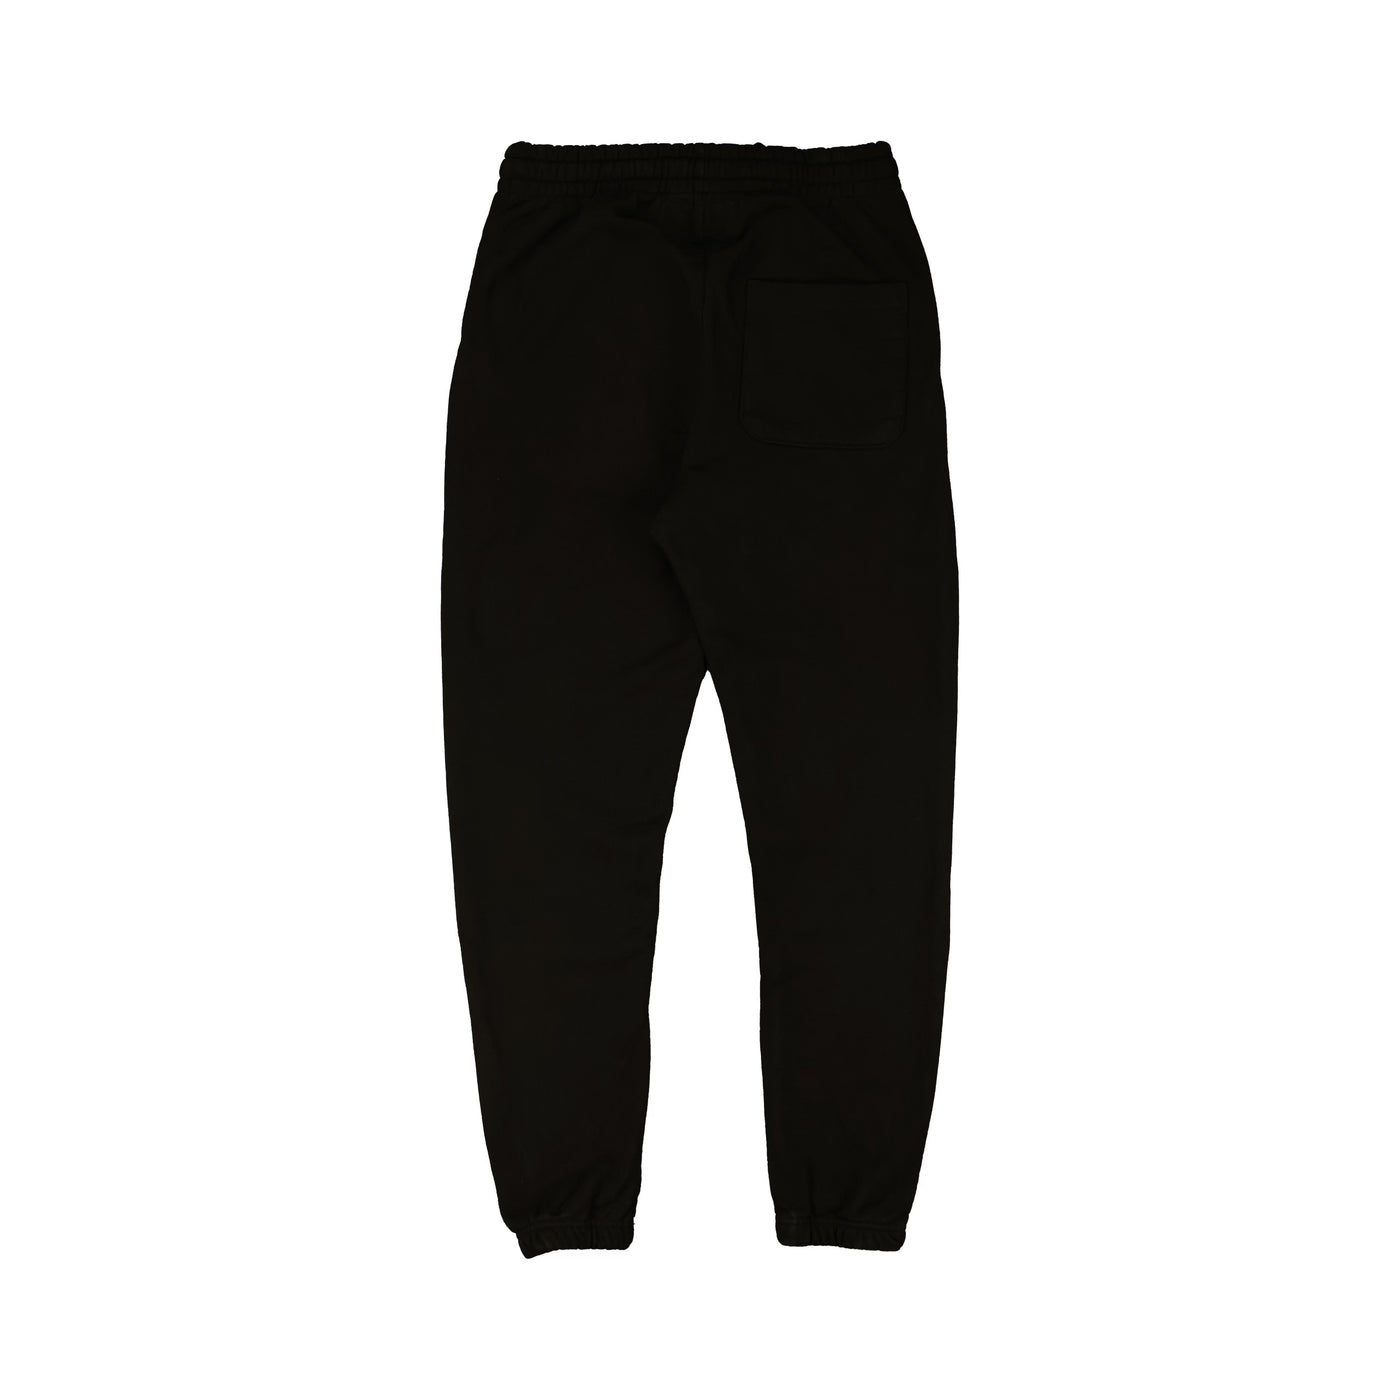 Marathon Foundation Sweatpants - Black/White - Back